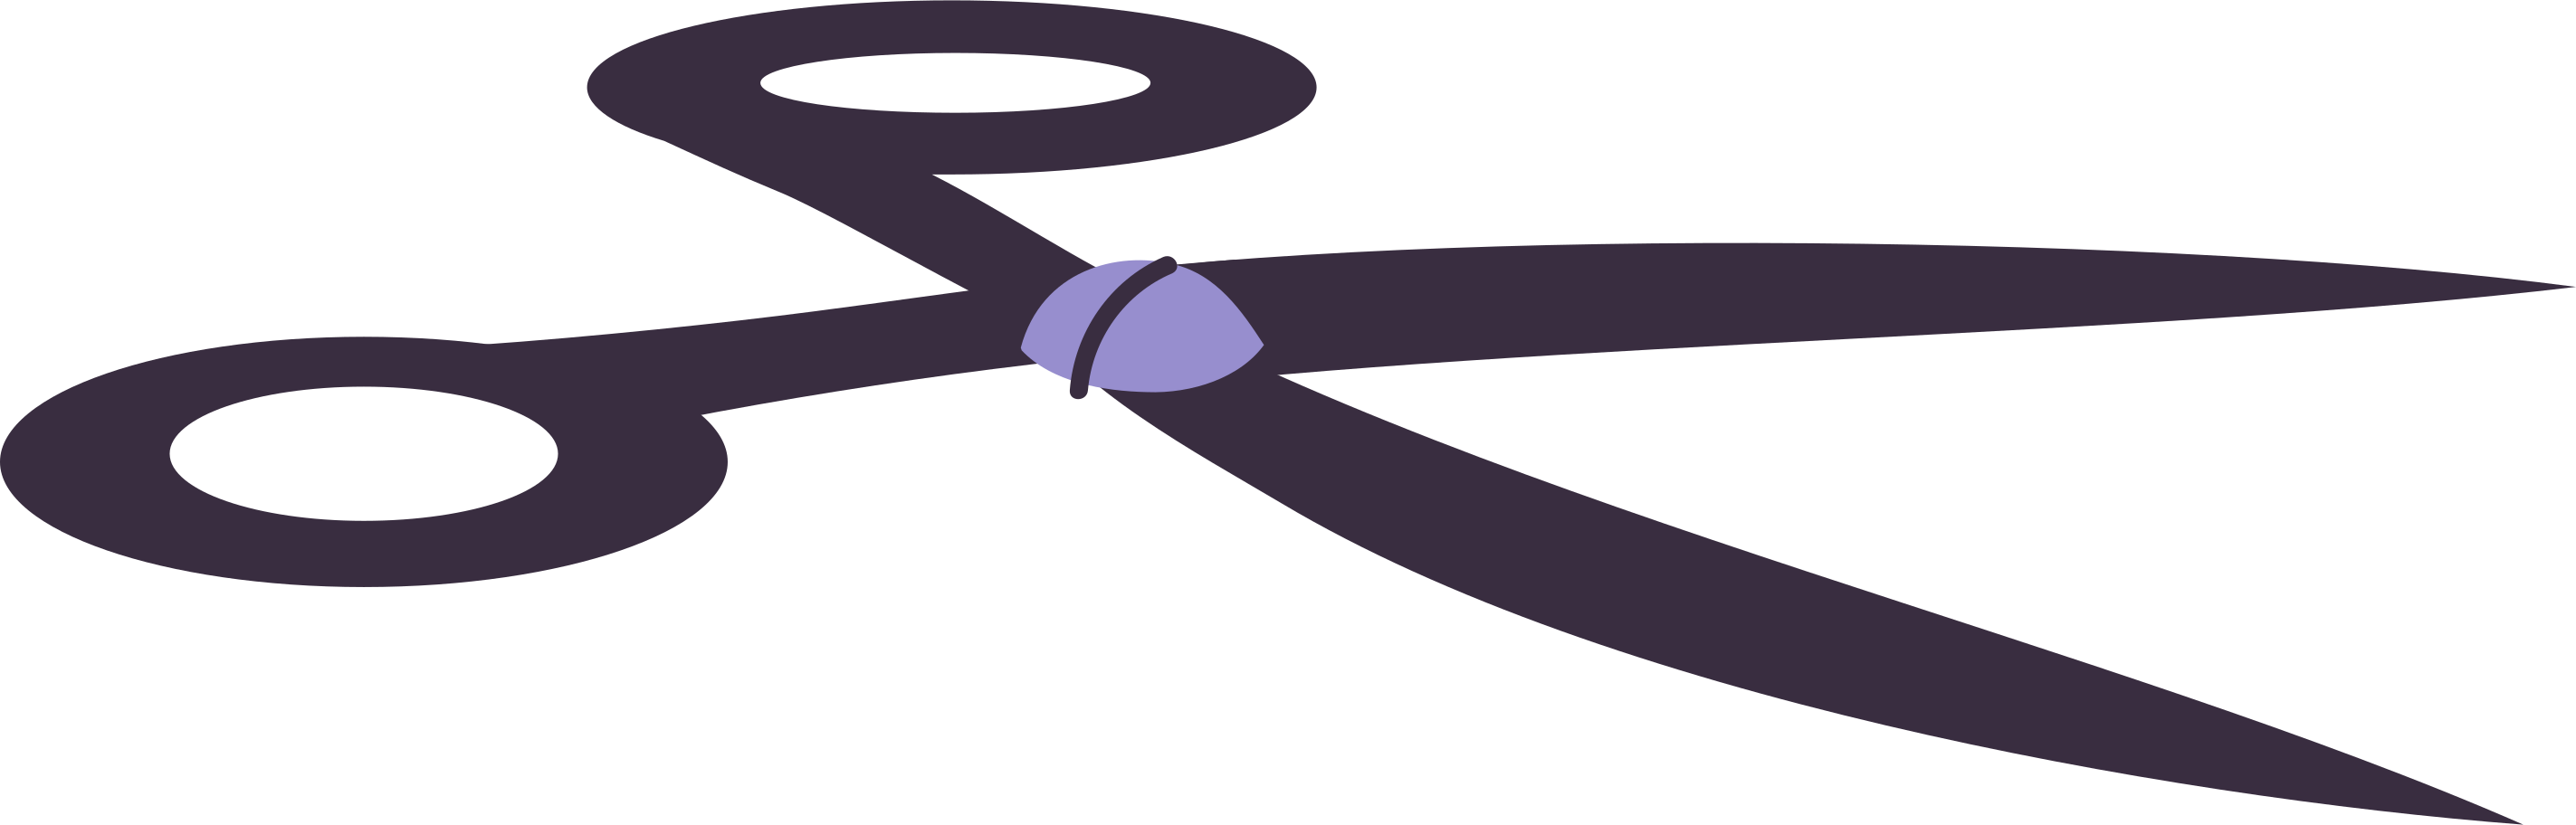 scissors Illustration in PNG, SVG